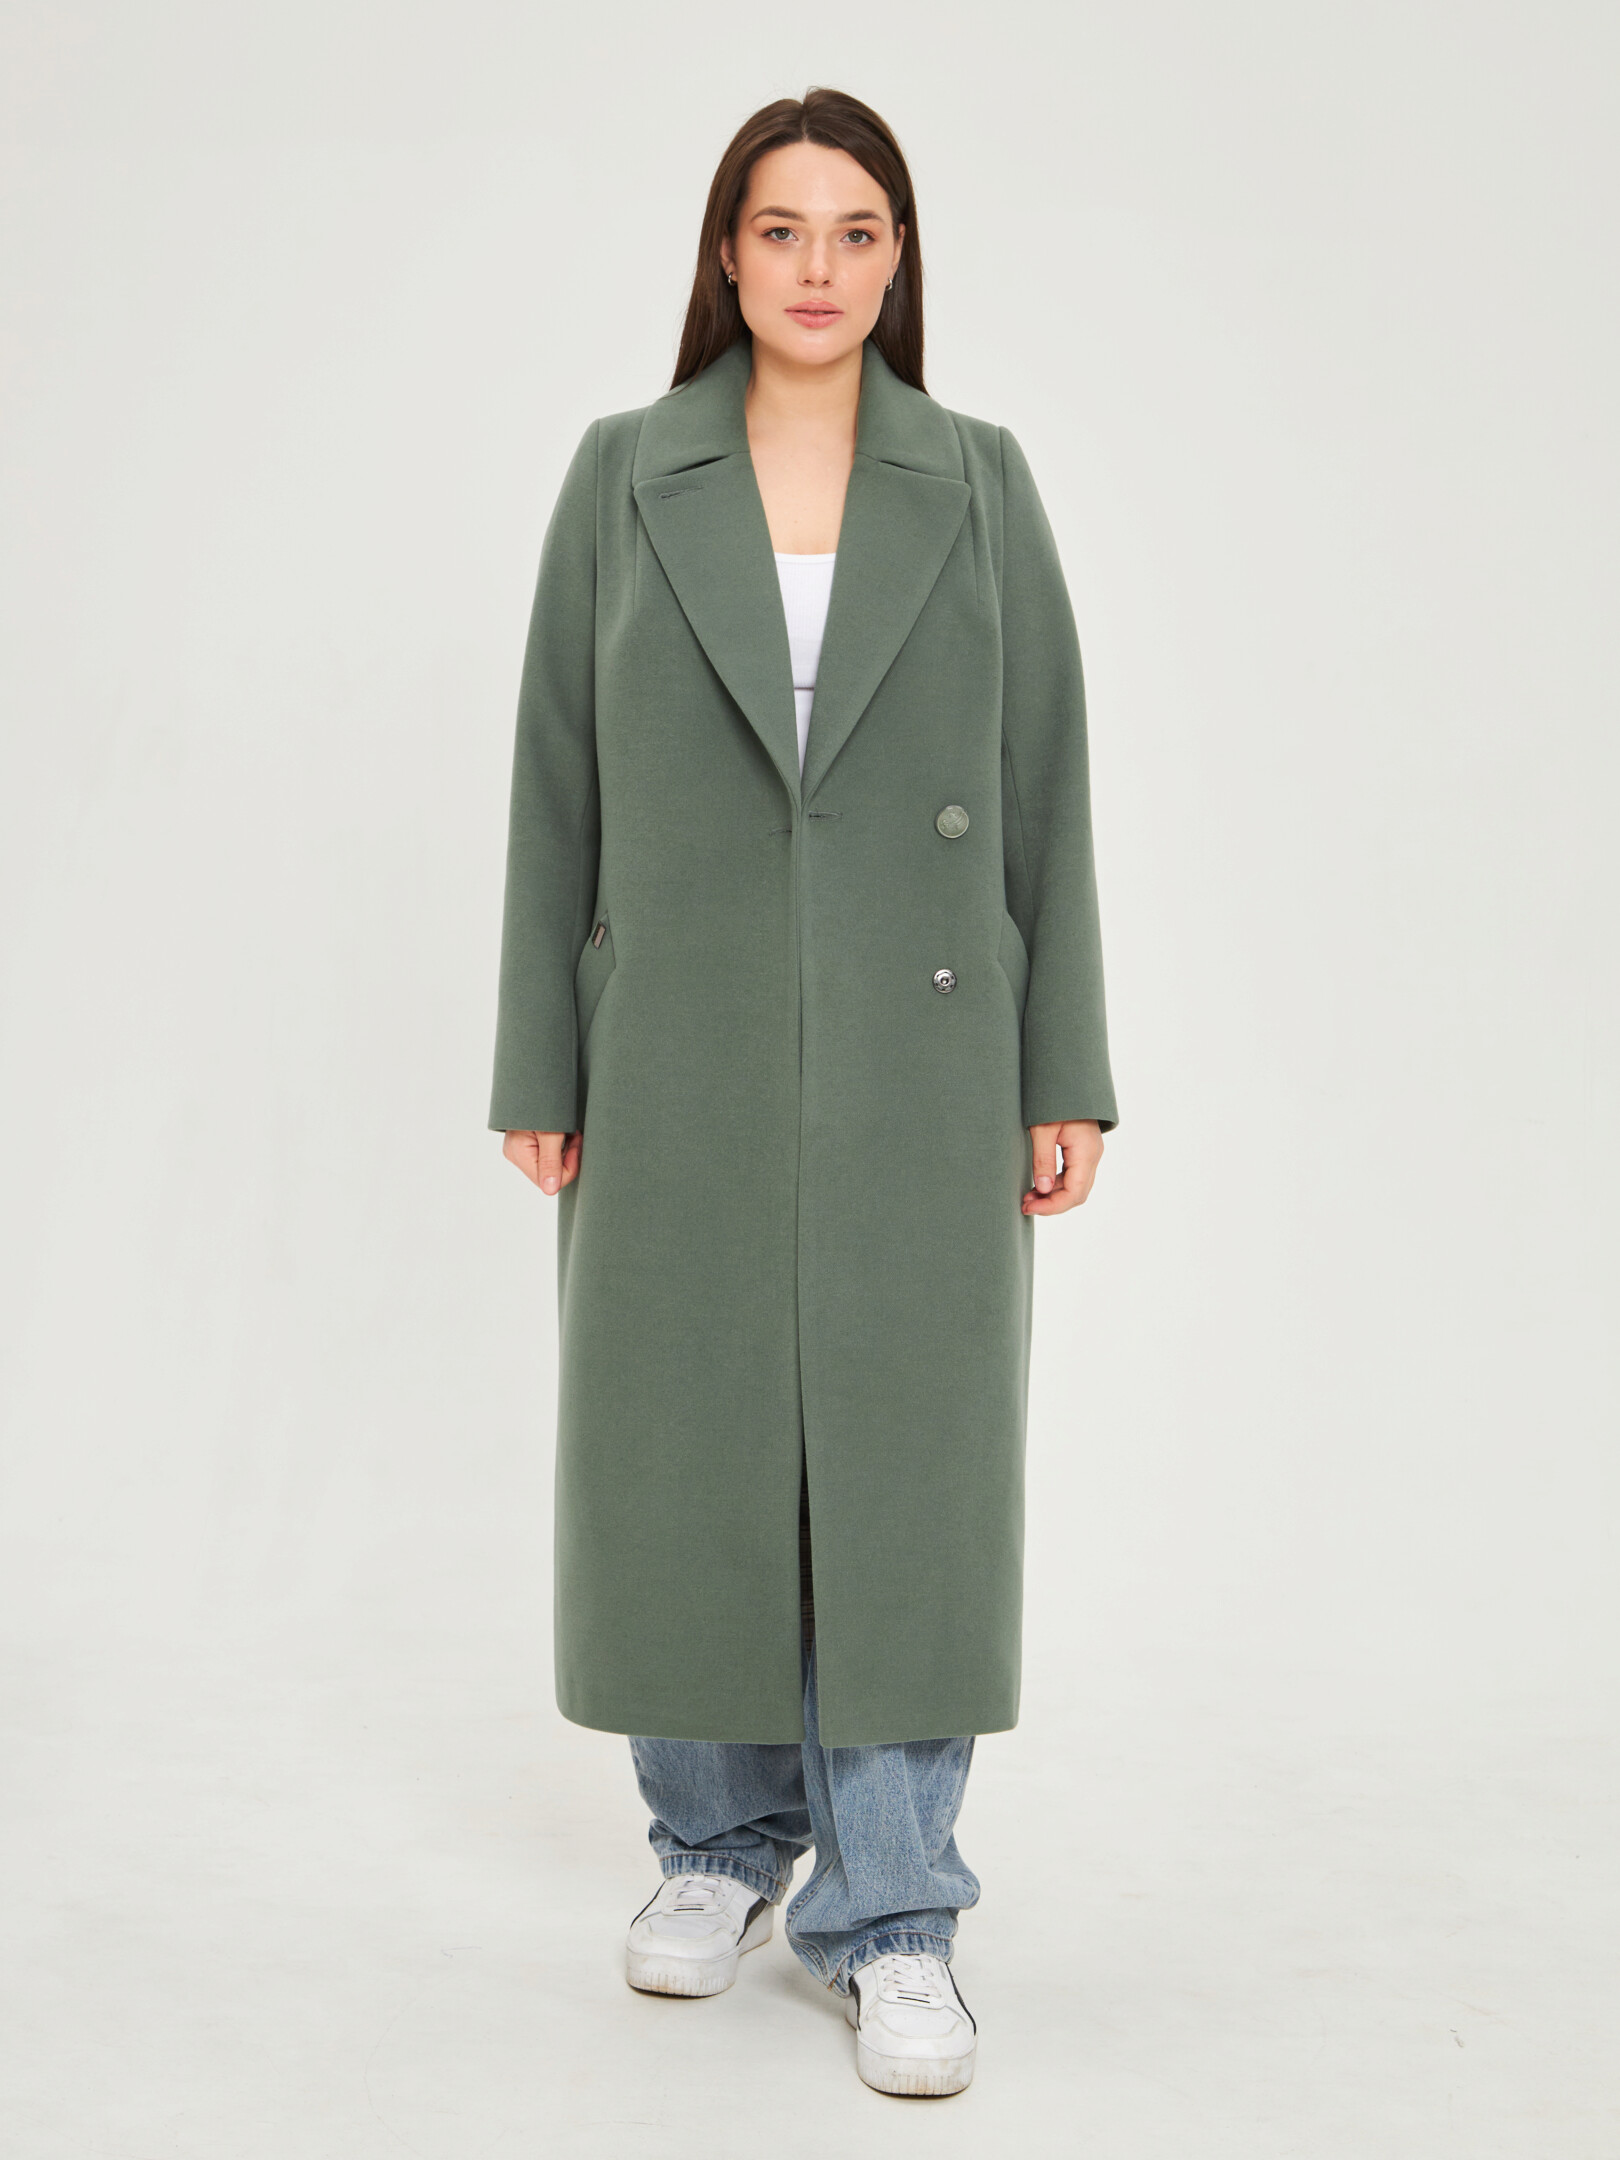 Пальто женское Каляев 66714 зеленое 54 RU